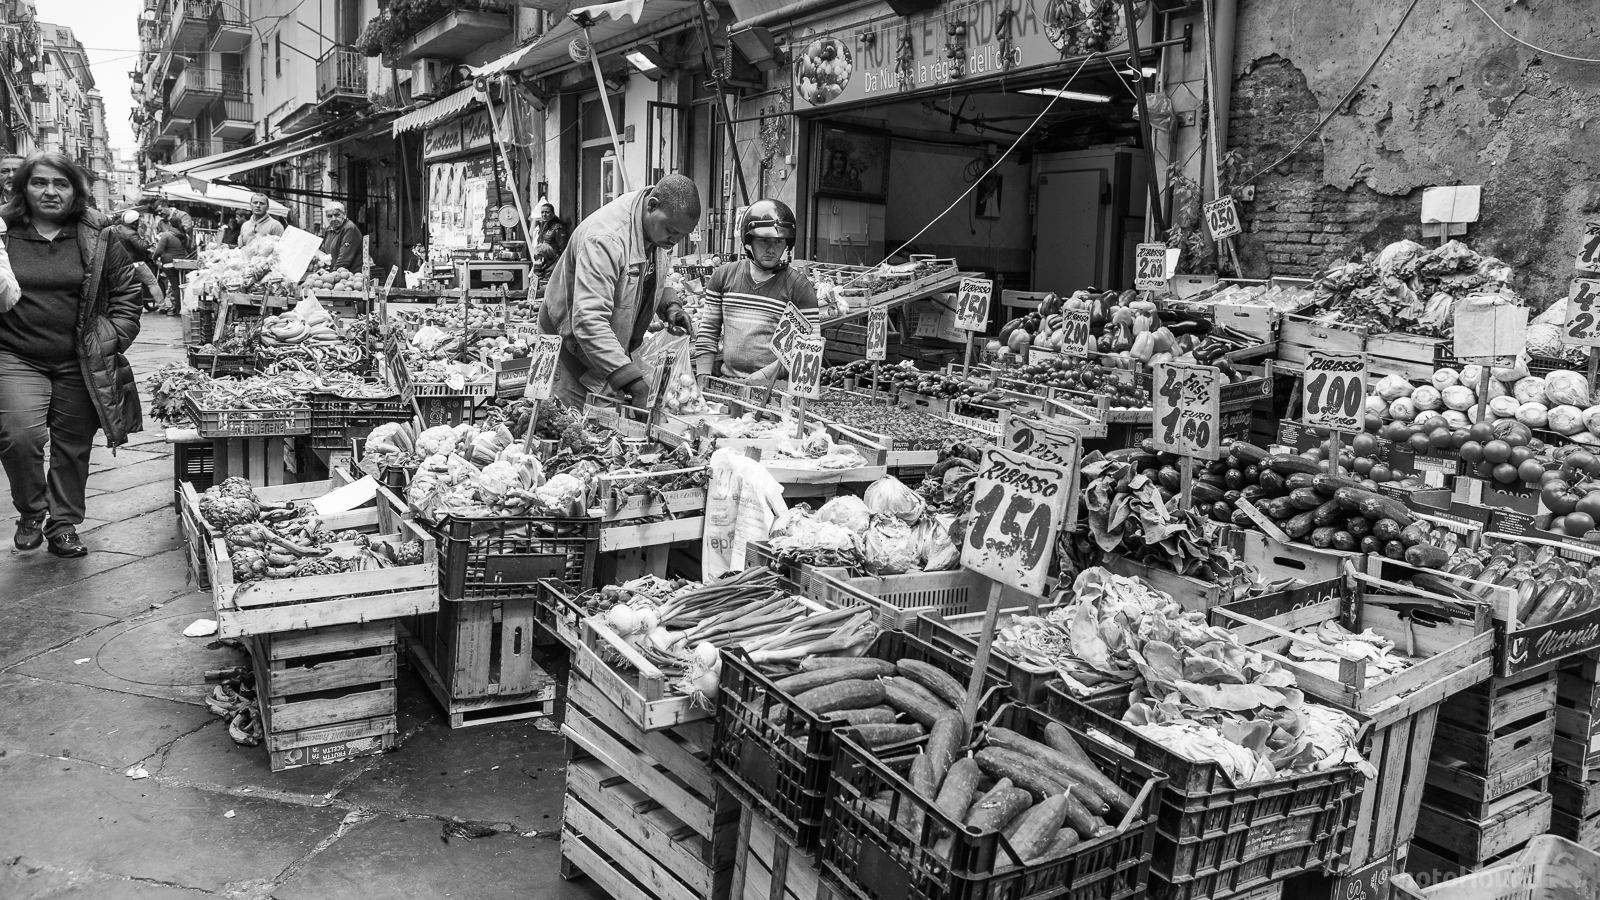 Image of Porta Nolana Fish Market Street Photography by Raimondo Giamberduca